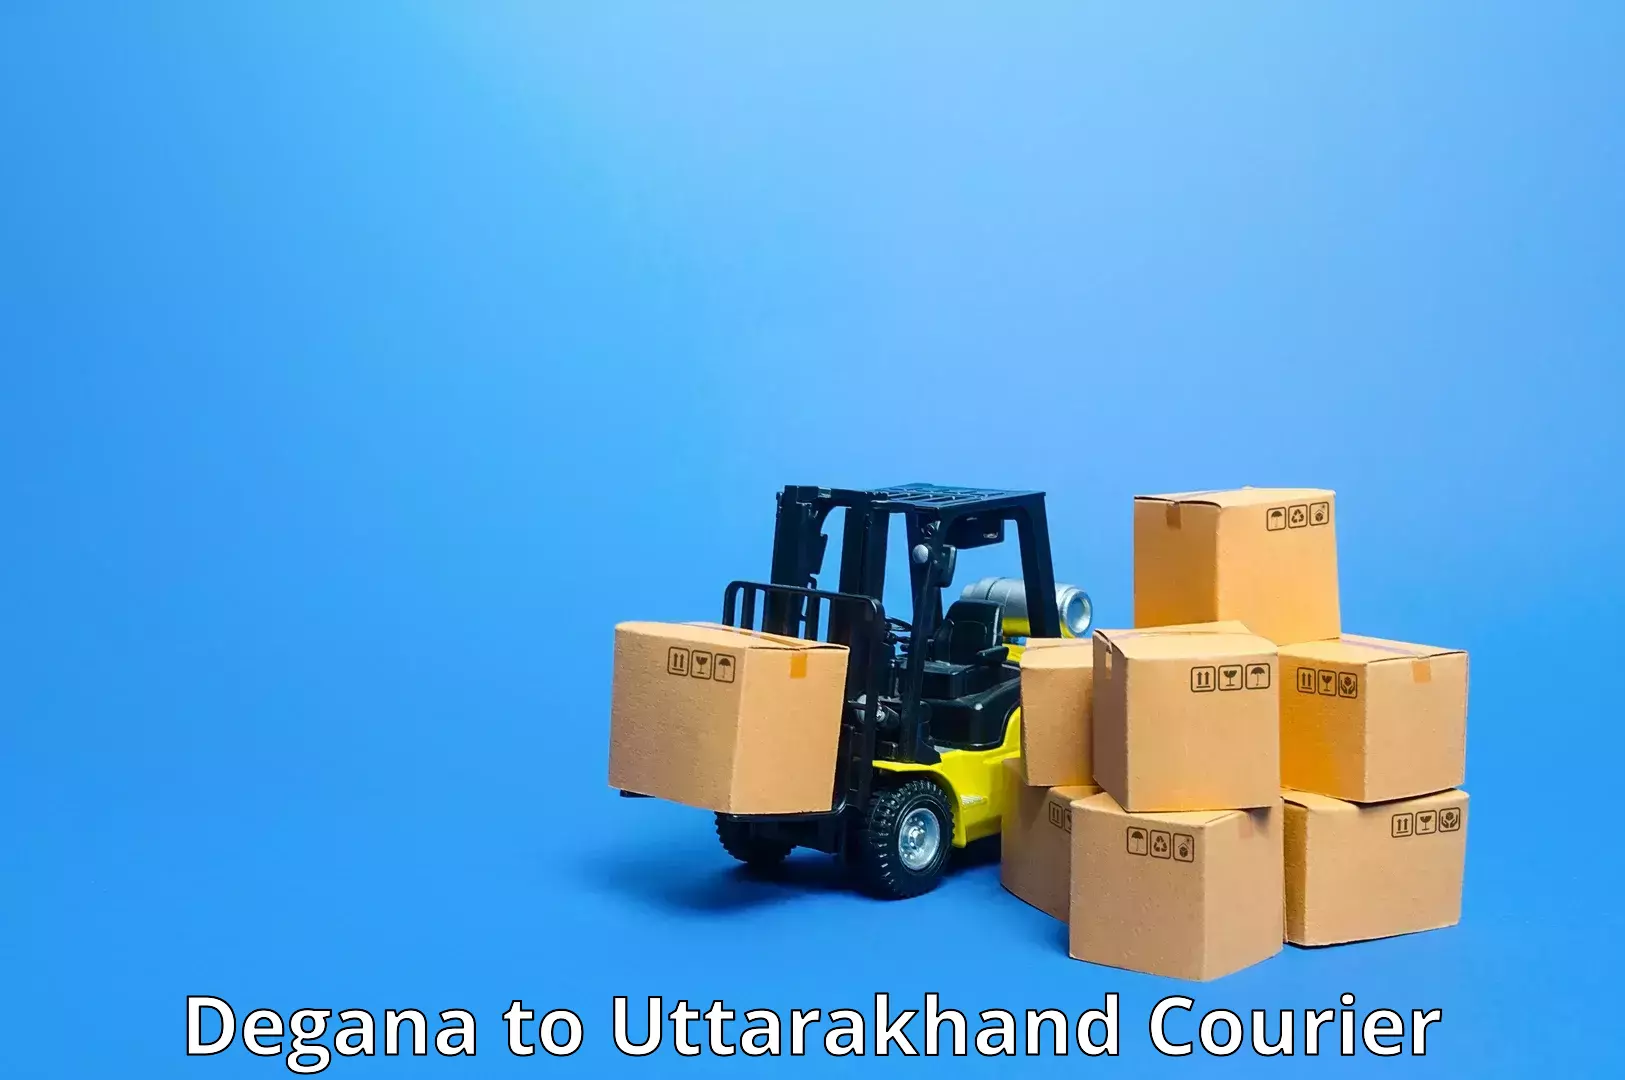 Efficient parcel transport Degana to IIT Roorkee